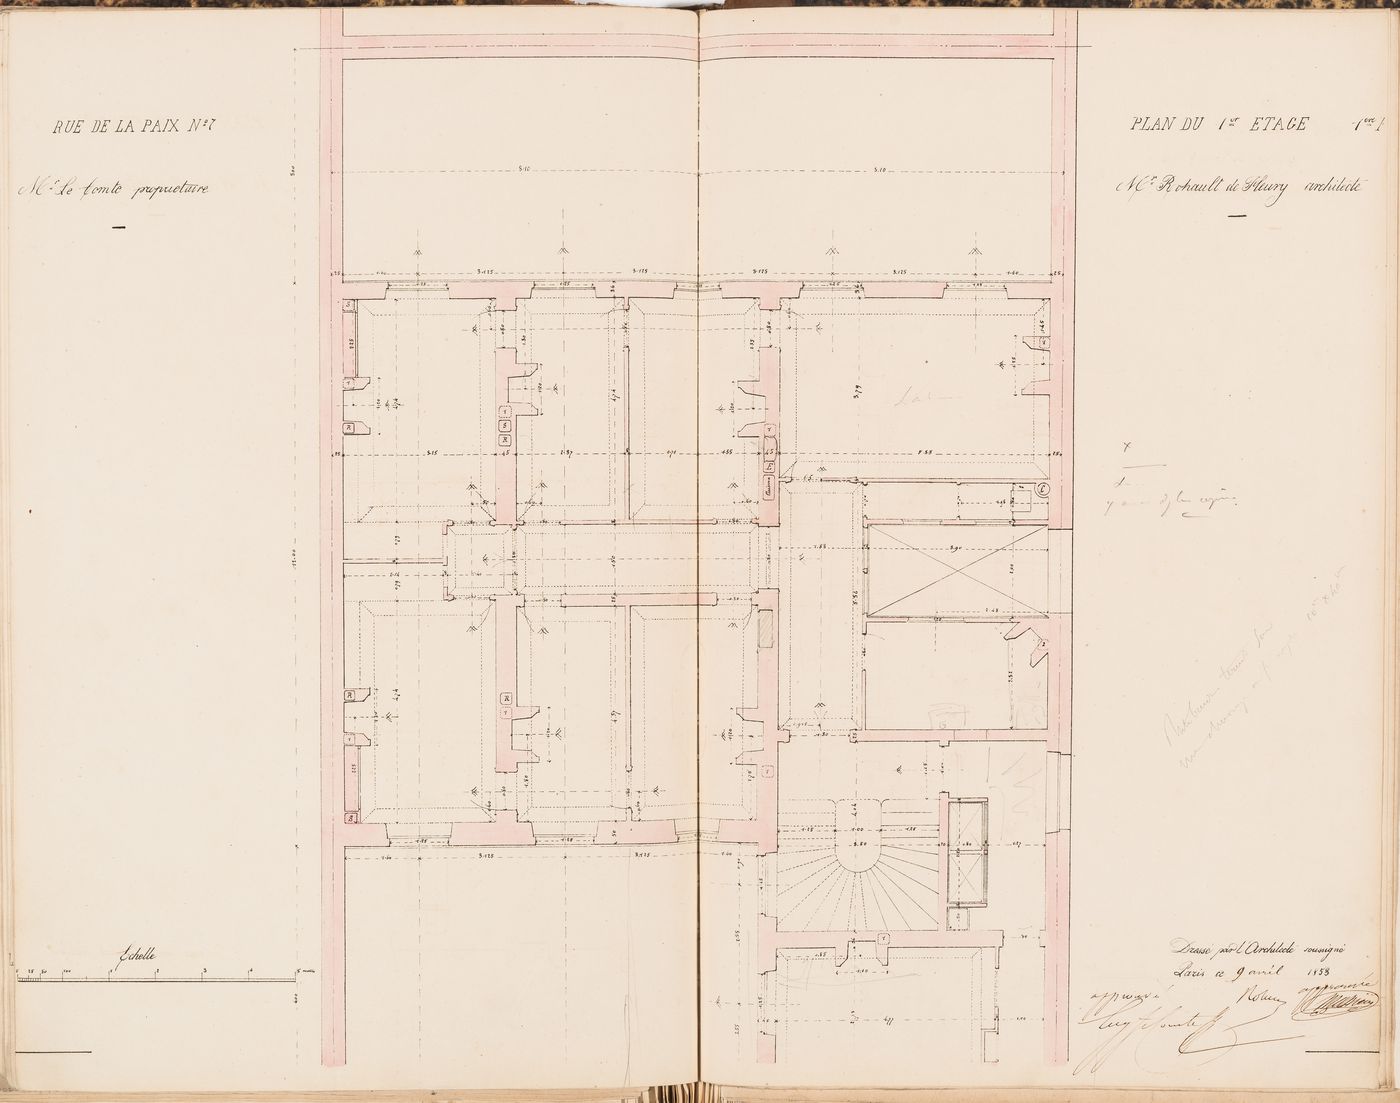 Contract drawing for the Hôtel du Timbre for Monsieur Le Comte, 7 rue de la Paix, Paris: First floor plan for the "2e appartement"